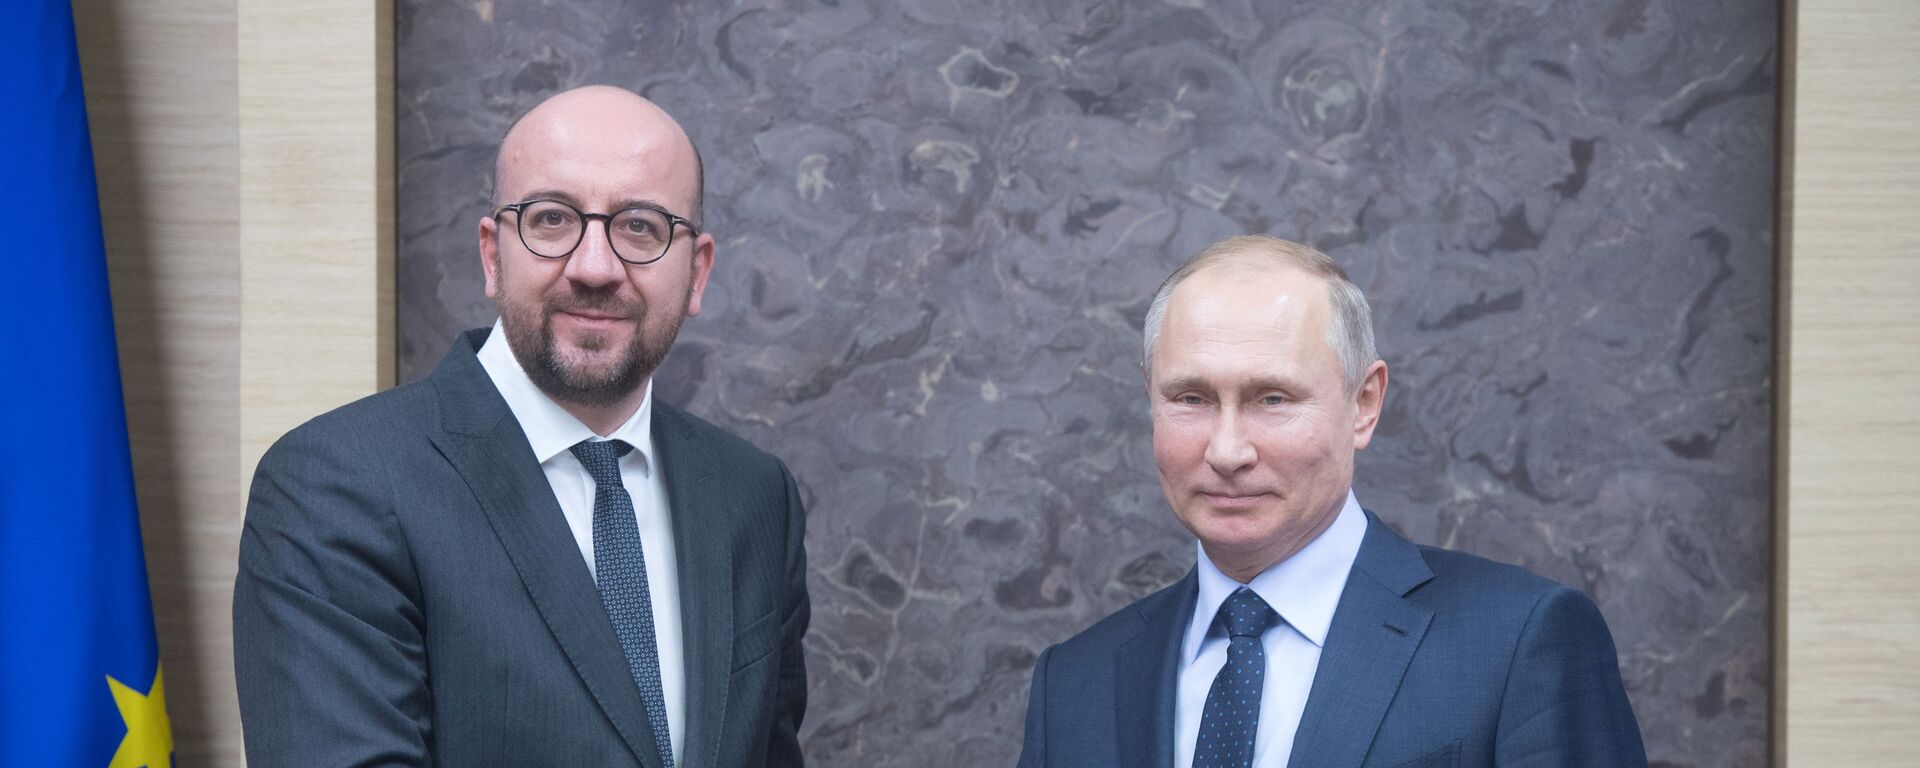 Владимир Путин и Шарль Мишель, архивное фото - Sputnik Азербайджан, 1920, 24.11.2021